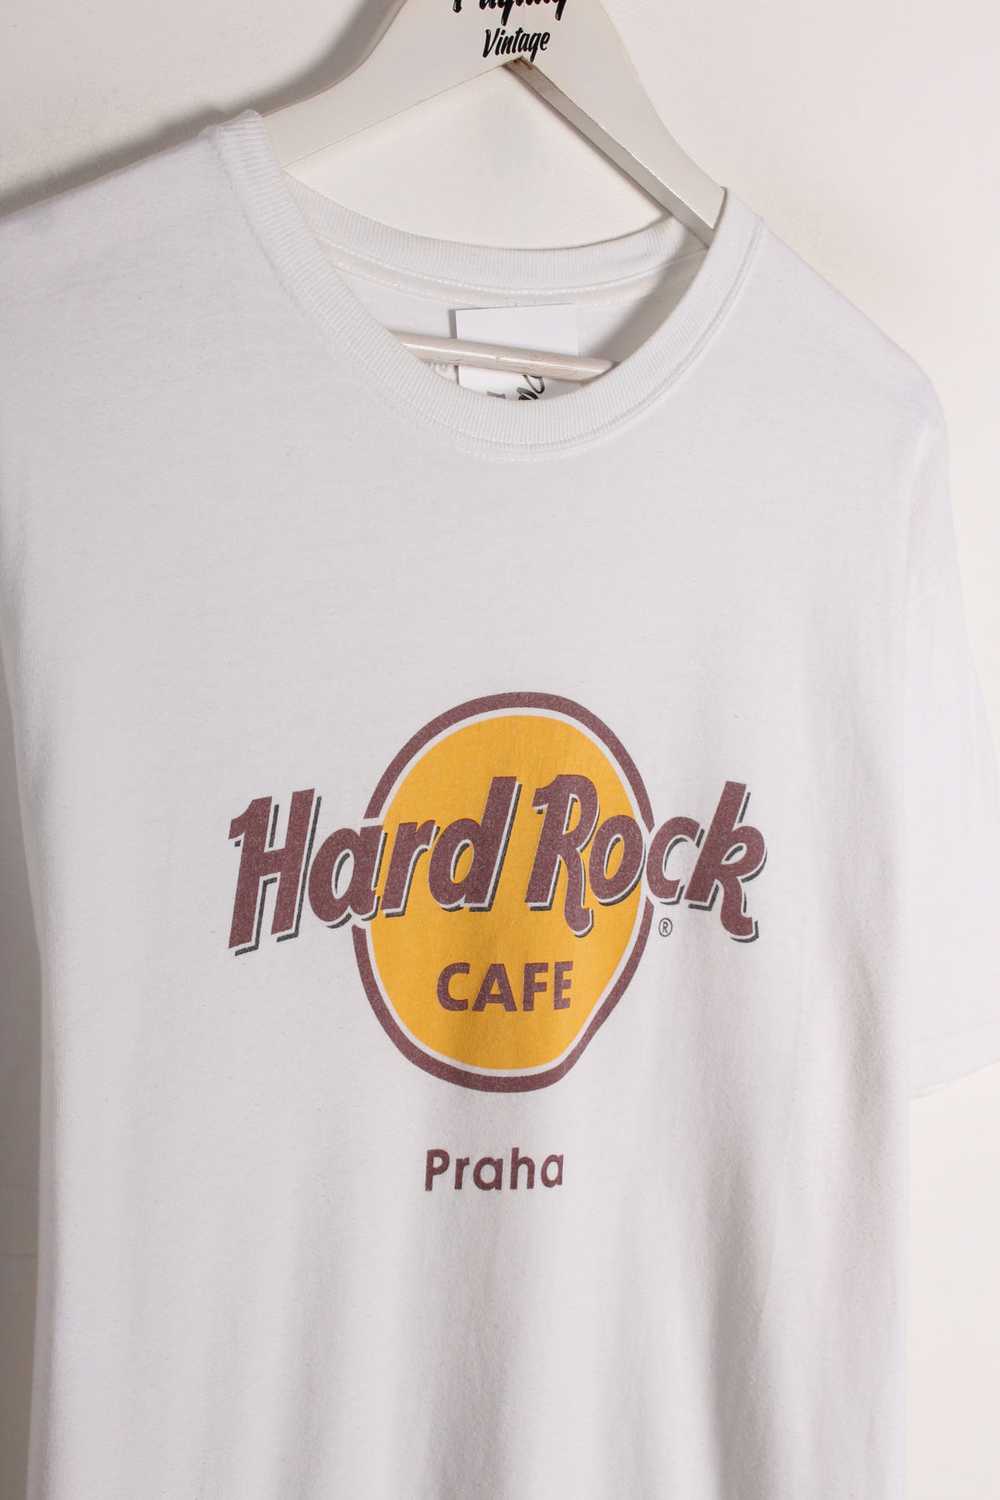 Hard Rock Cafe T-Shirt Large - image 2